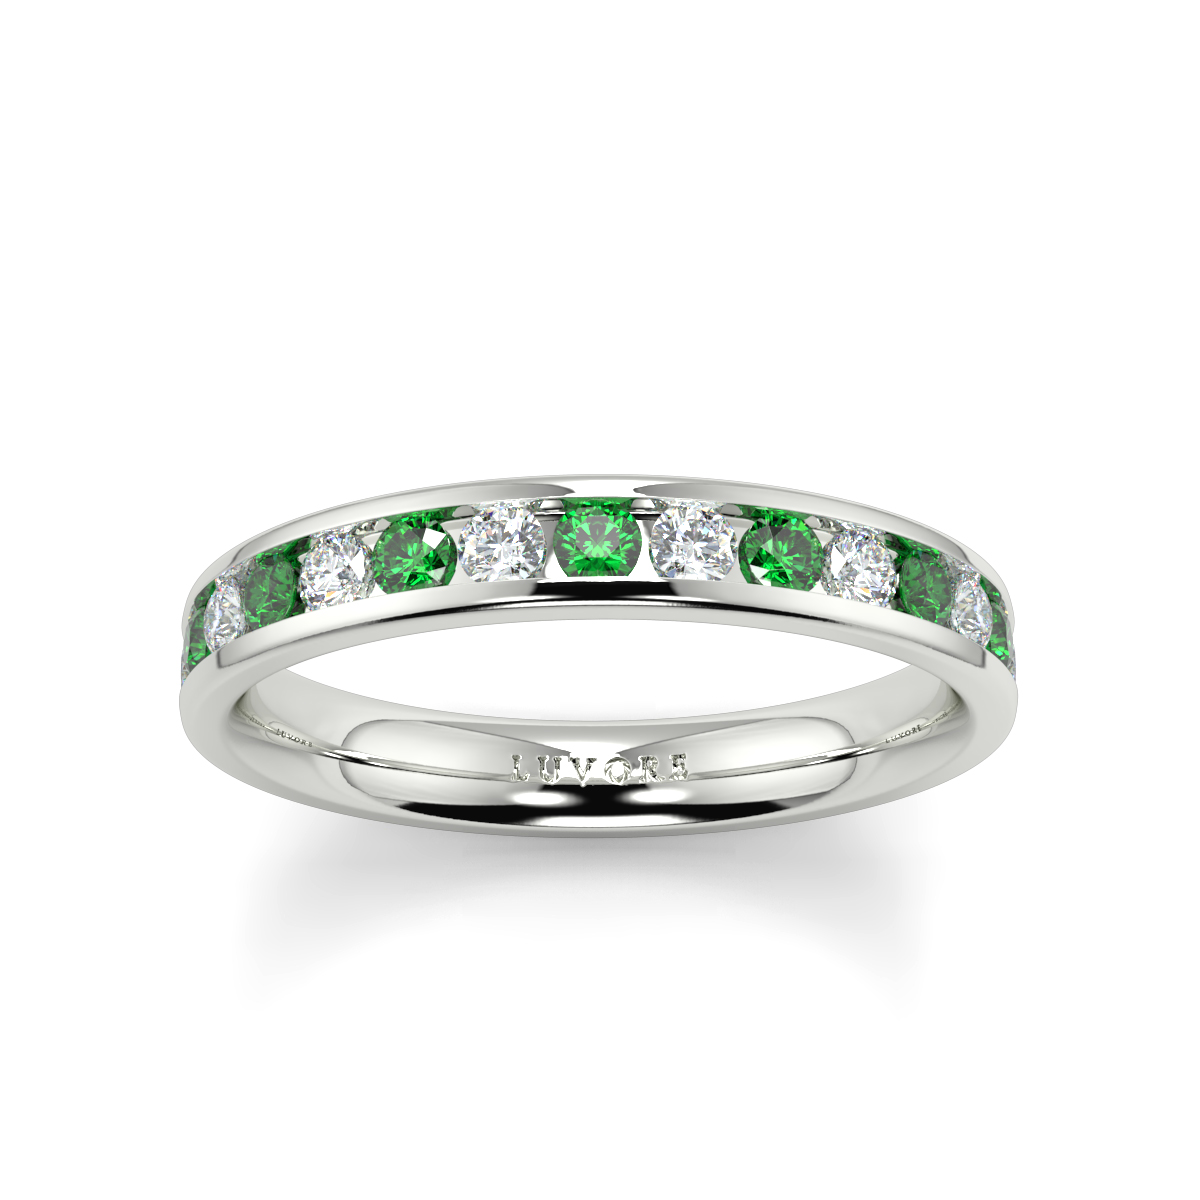 Wedding Band Diamond Set Rounded Court Shape Channel Set Emerald